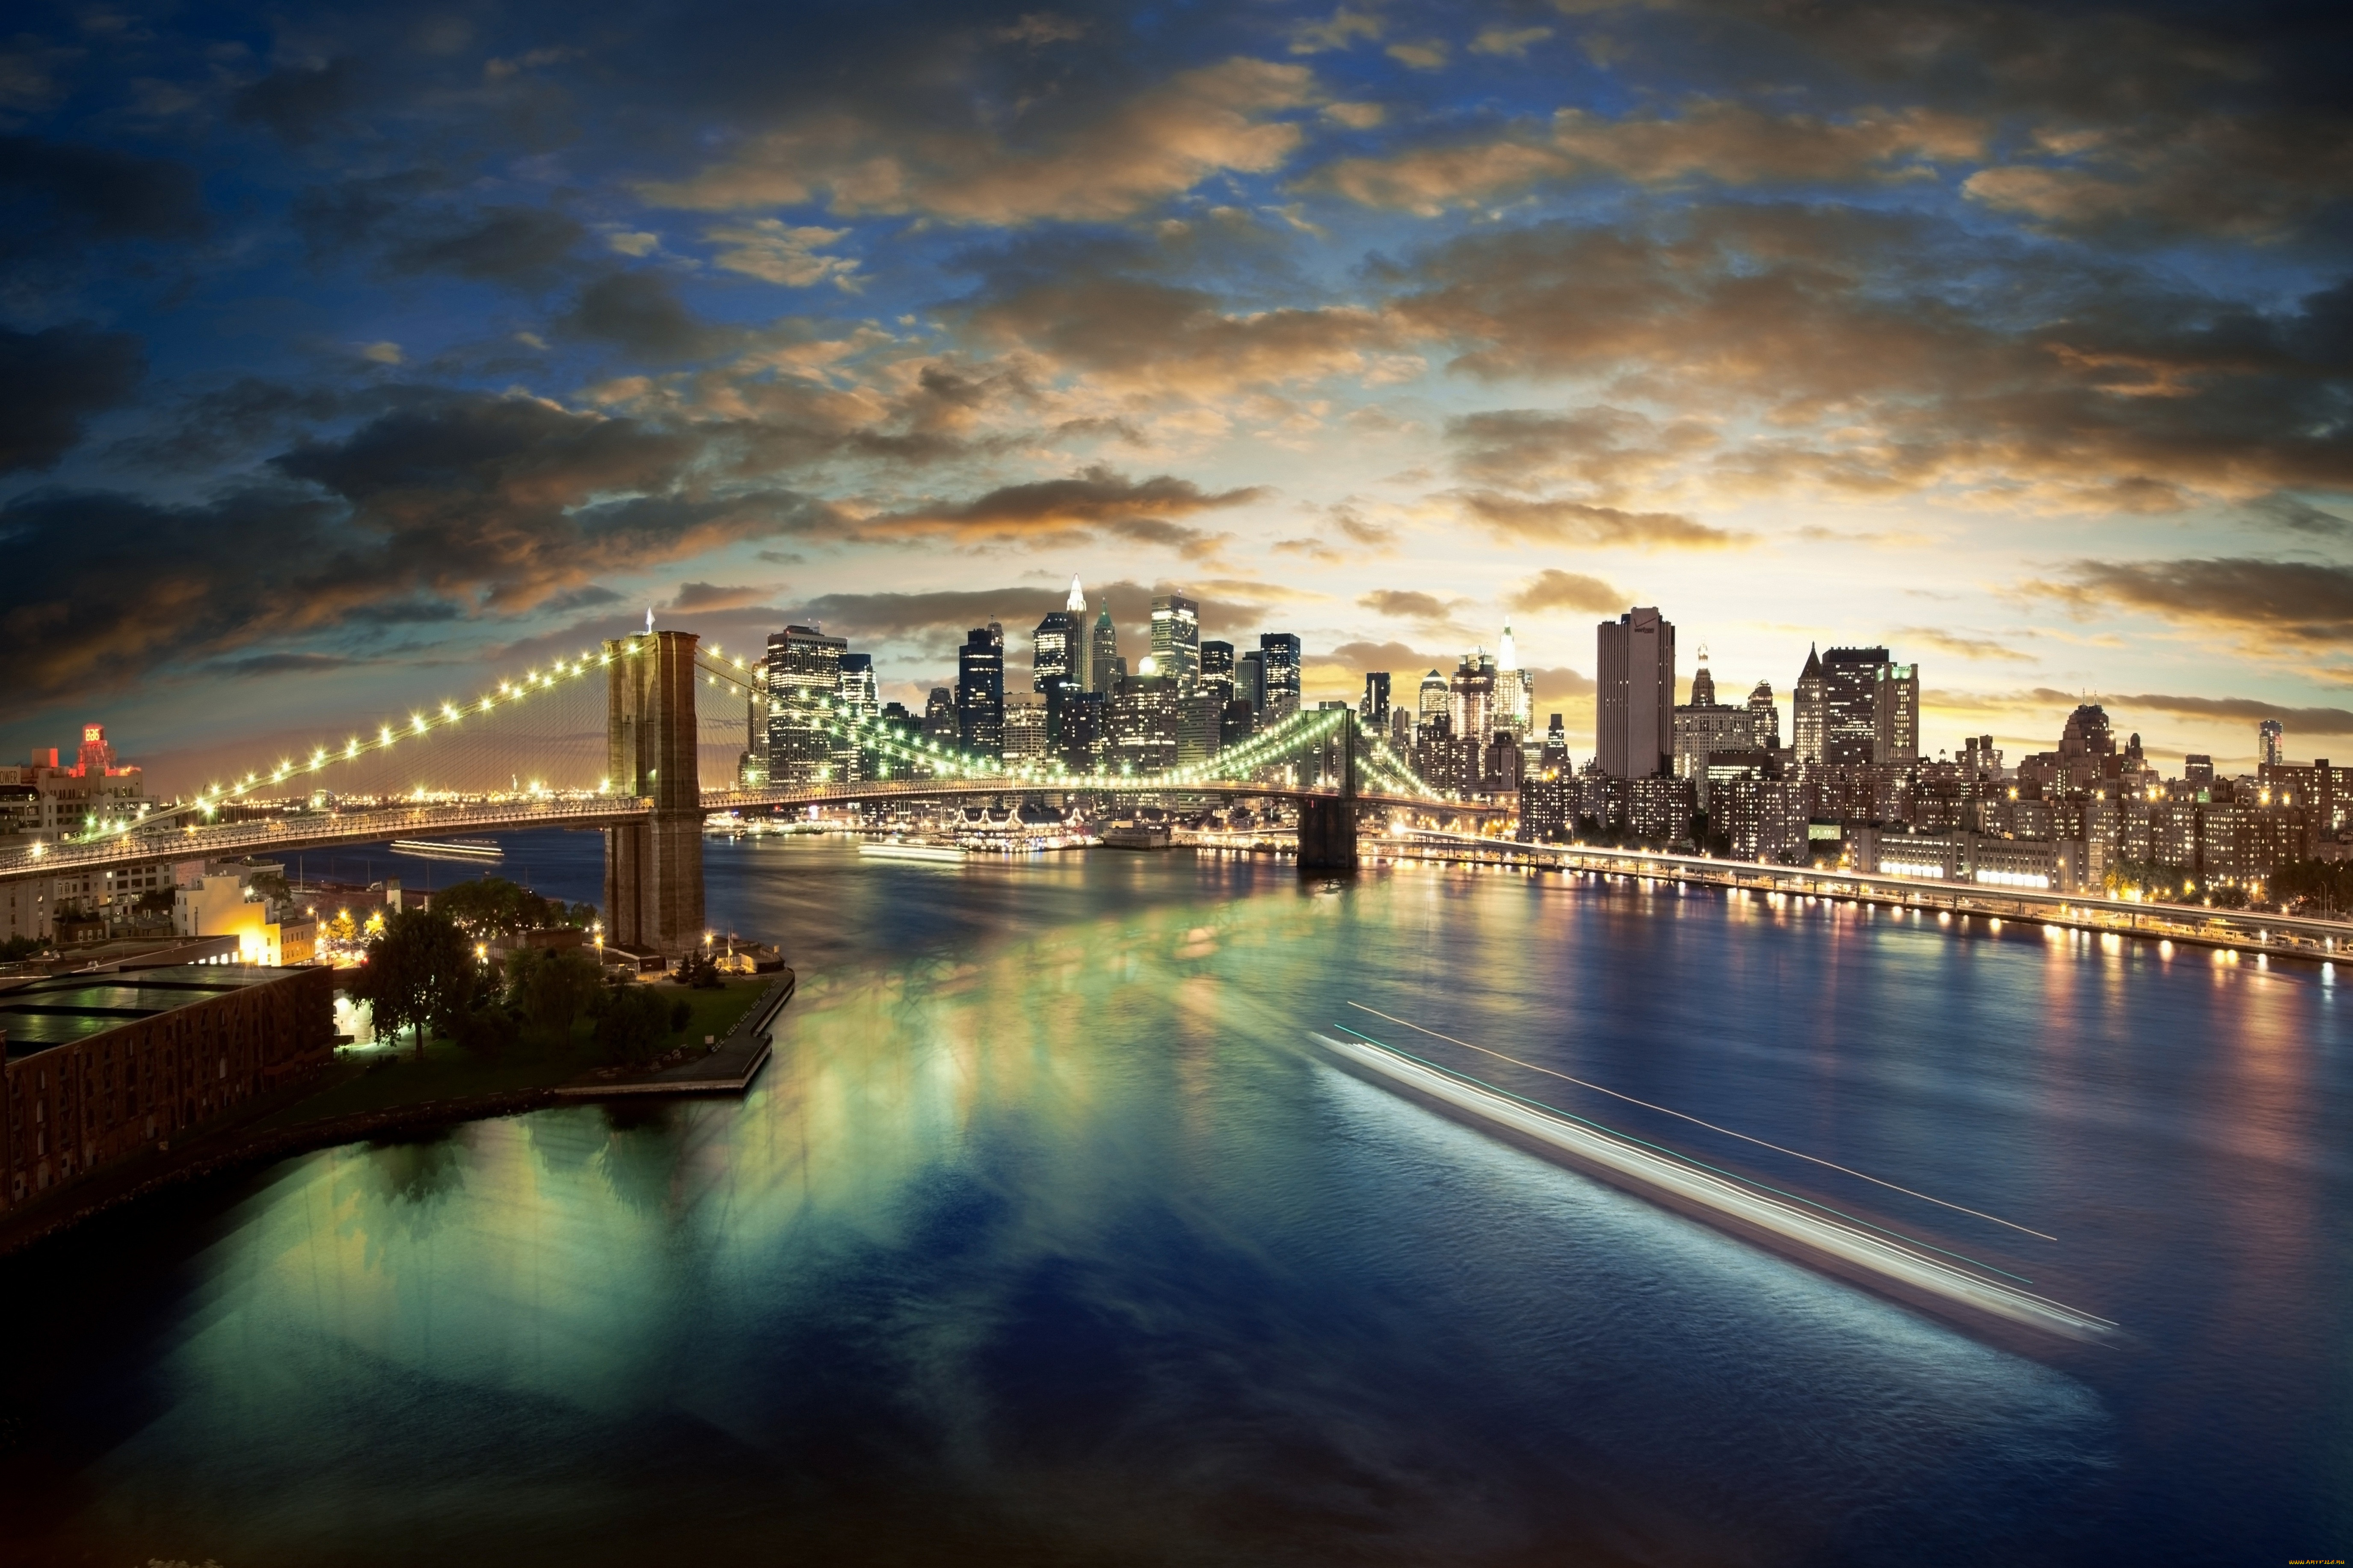 Обои на телефон самые красивые в мире. Бруклинский мост Нью-Йорк. Бруклинский мост панорама. Бруклинский мост Нью-Йорк панорама. Мост, Нью-Йорк, река, Манхеттен.